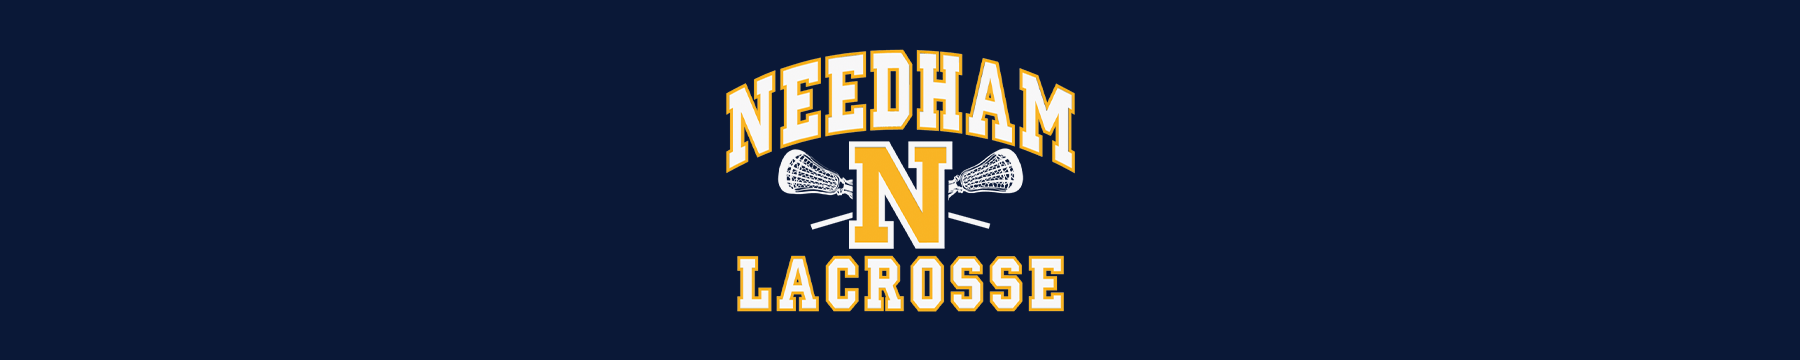 Needham Lacrosse